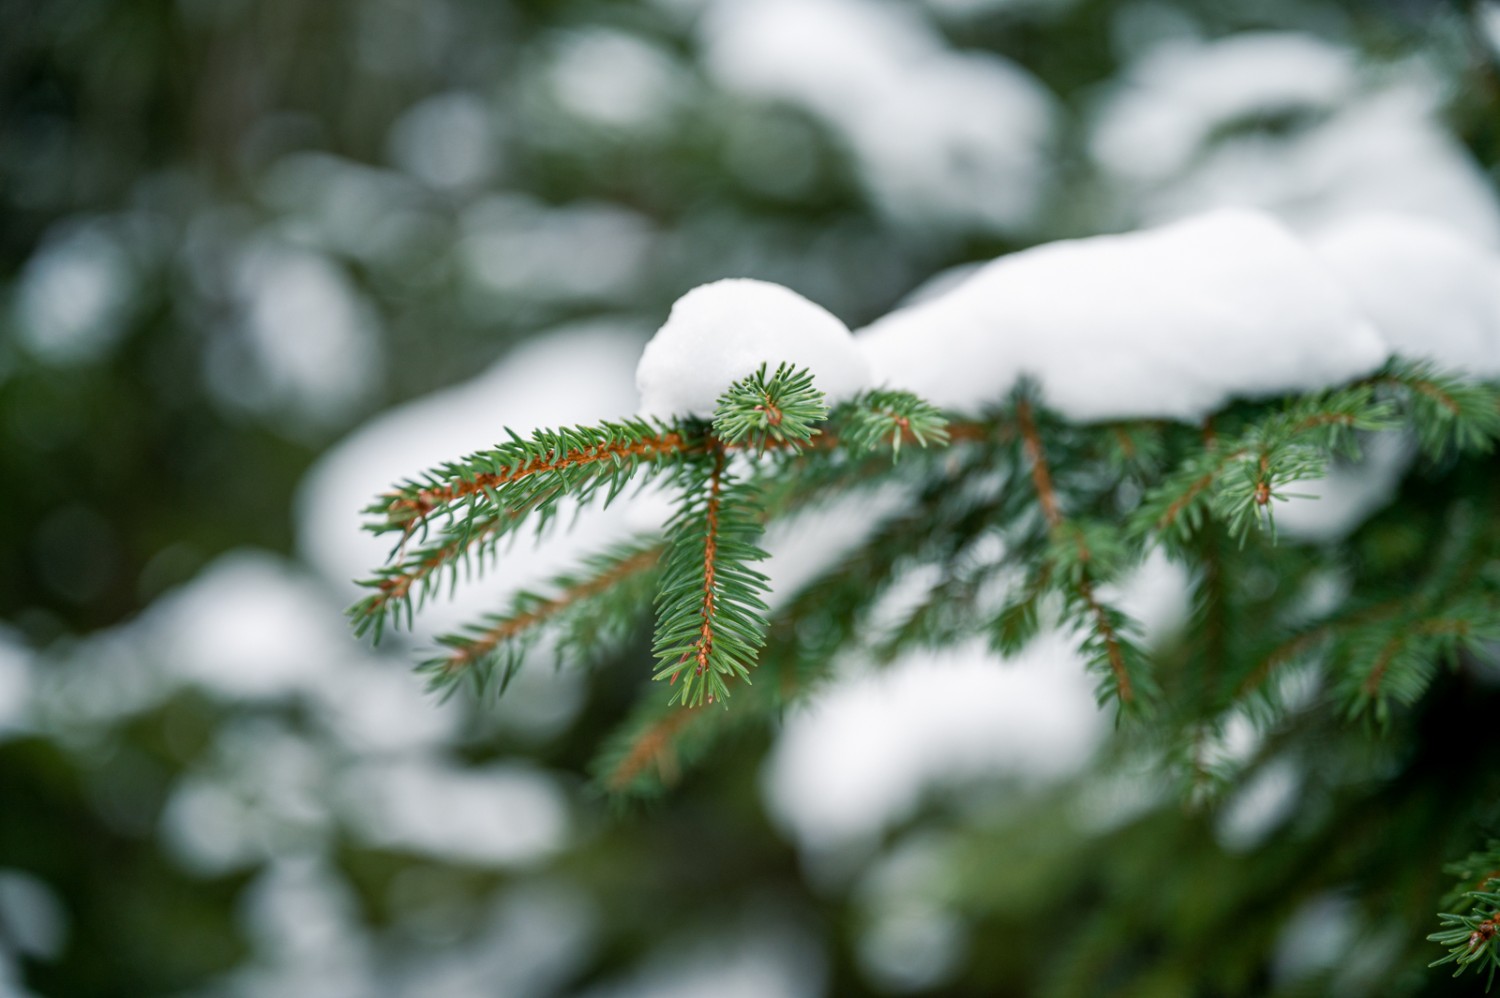 Je nach Zeitpunkt, befindet sich mehr oder weniger Schnee auf den Bäumen. Bild: Jon Guler